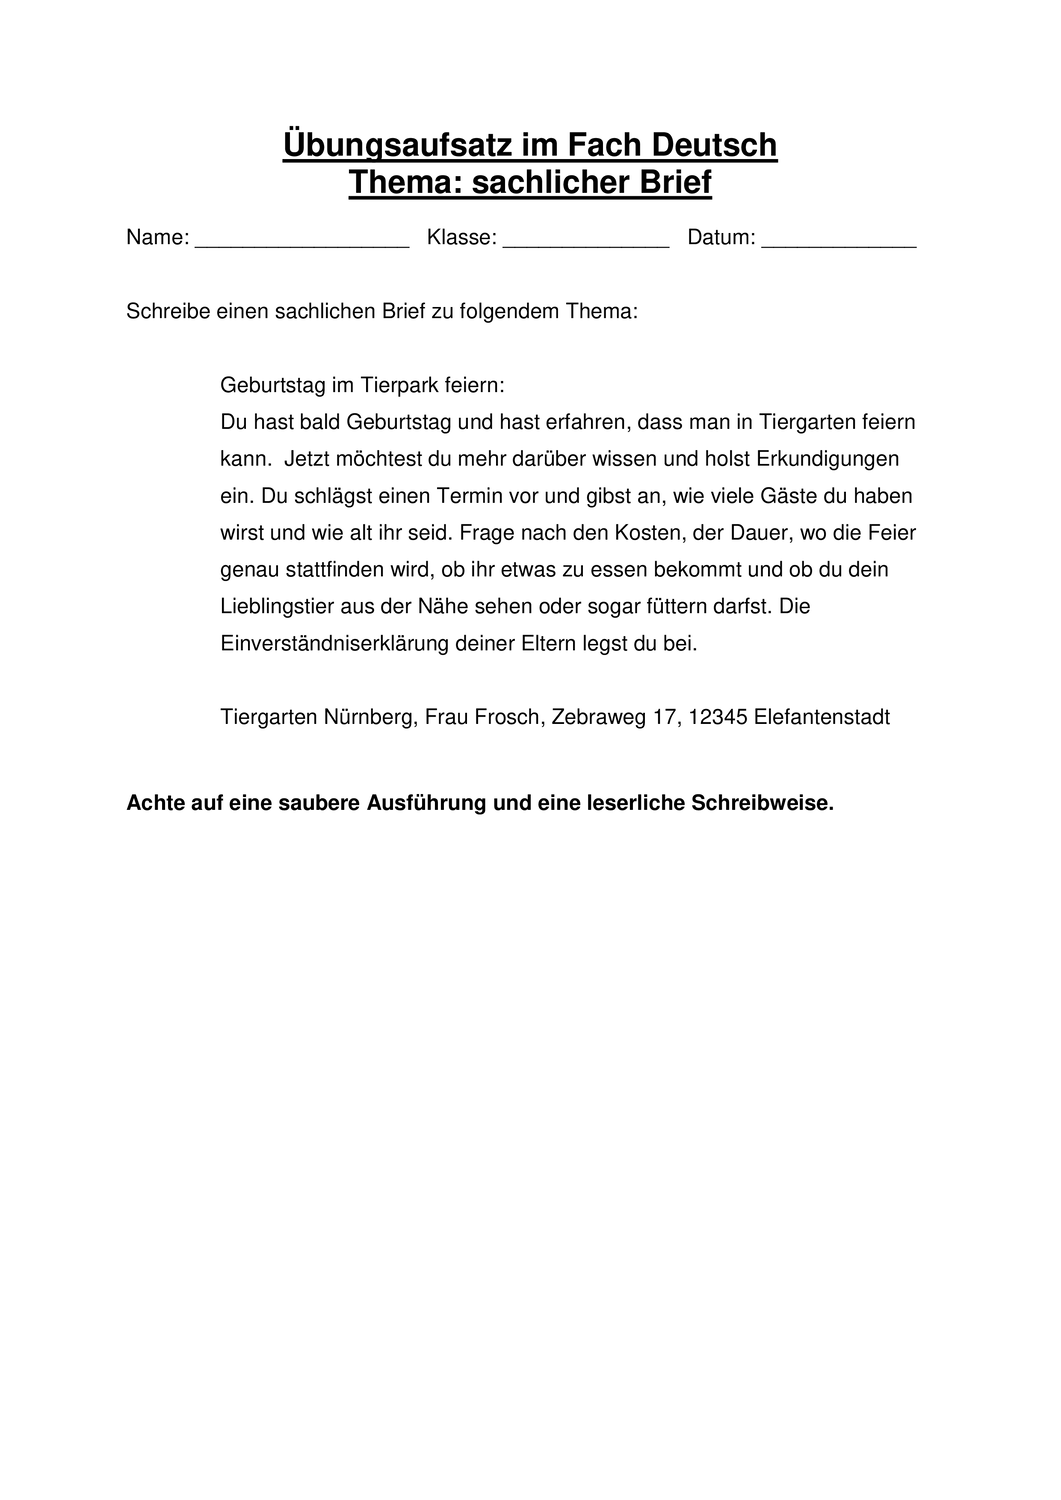 Sachlicher Brief Themenvorgabe Fur Ubungsaufsatz Unterrichtsmaterial Im Fach Deutsch Aufsatz Brief Briefe Schreiben